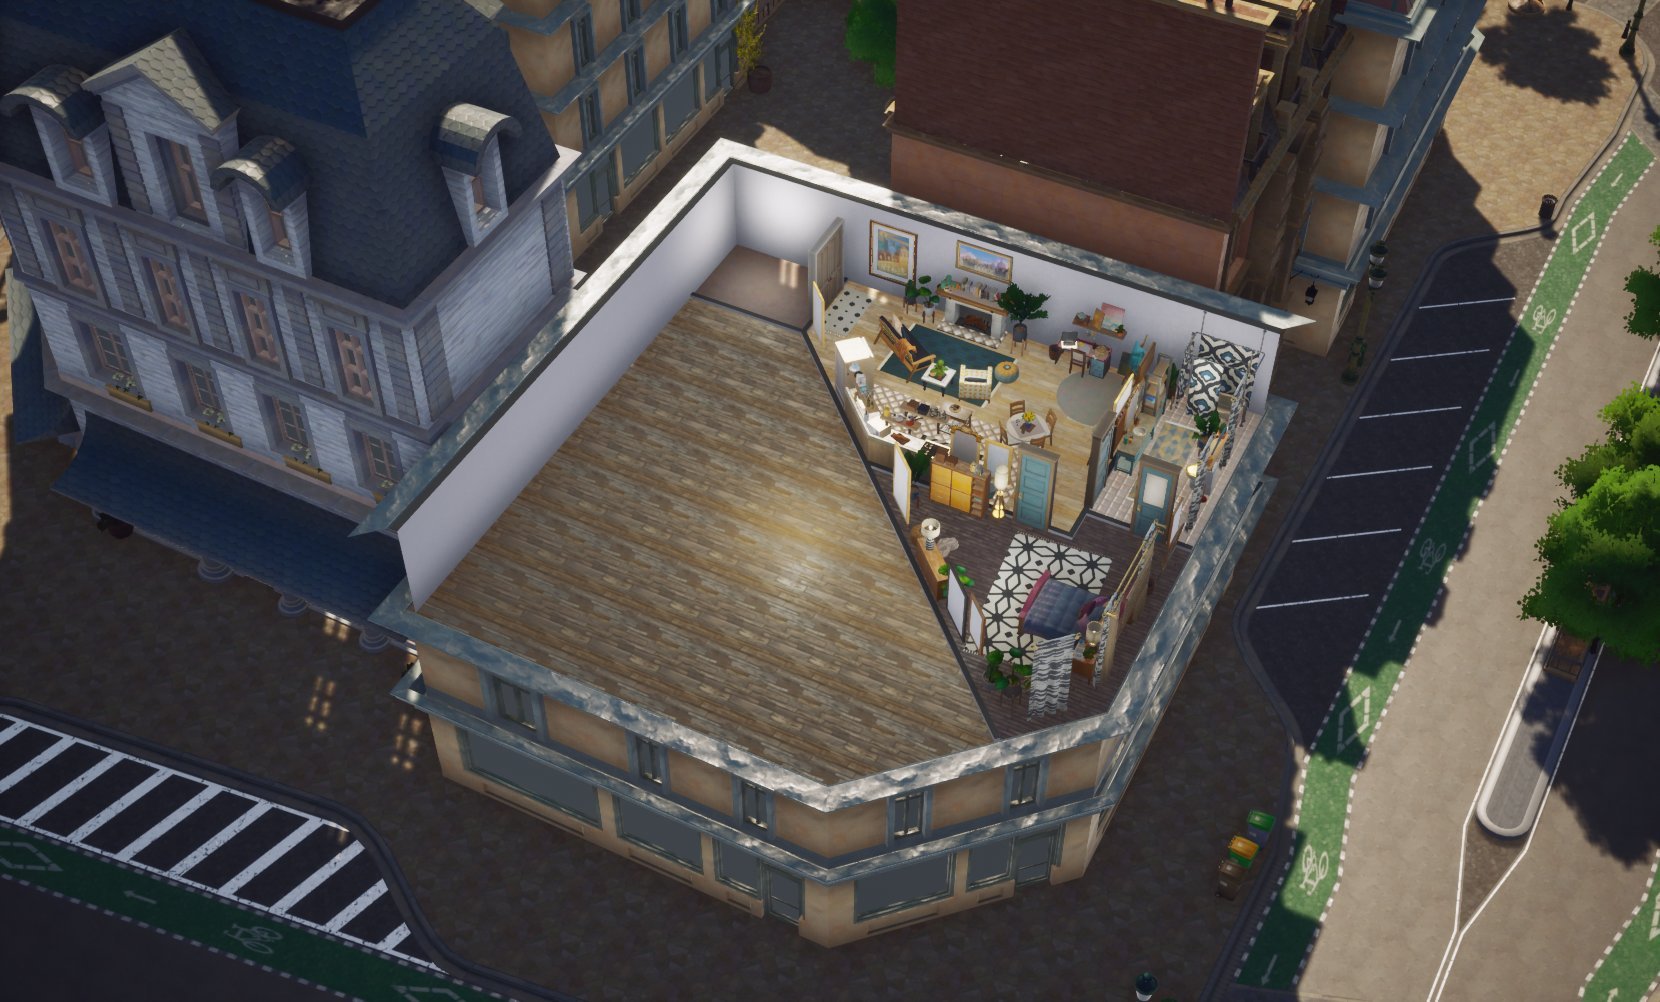 The Sims 5 | Vazam imagens em HD que mostram cidade e gameplay 2024 Portal Viciados